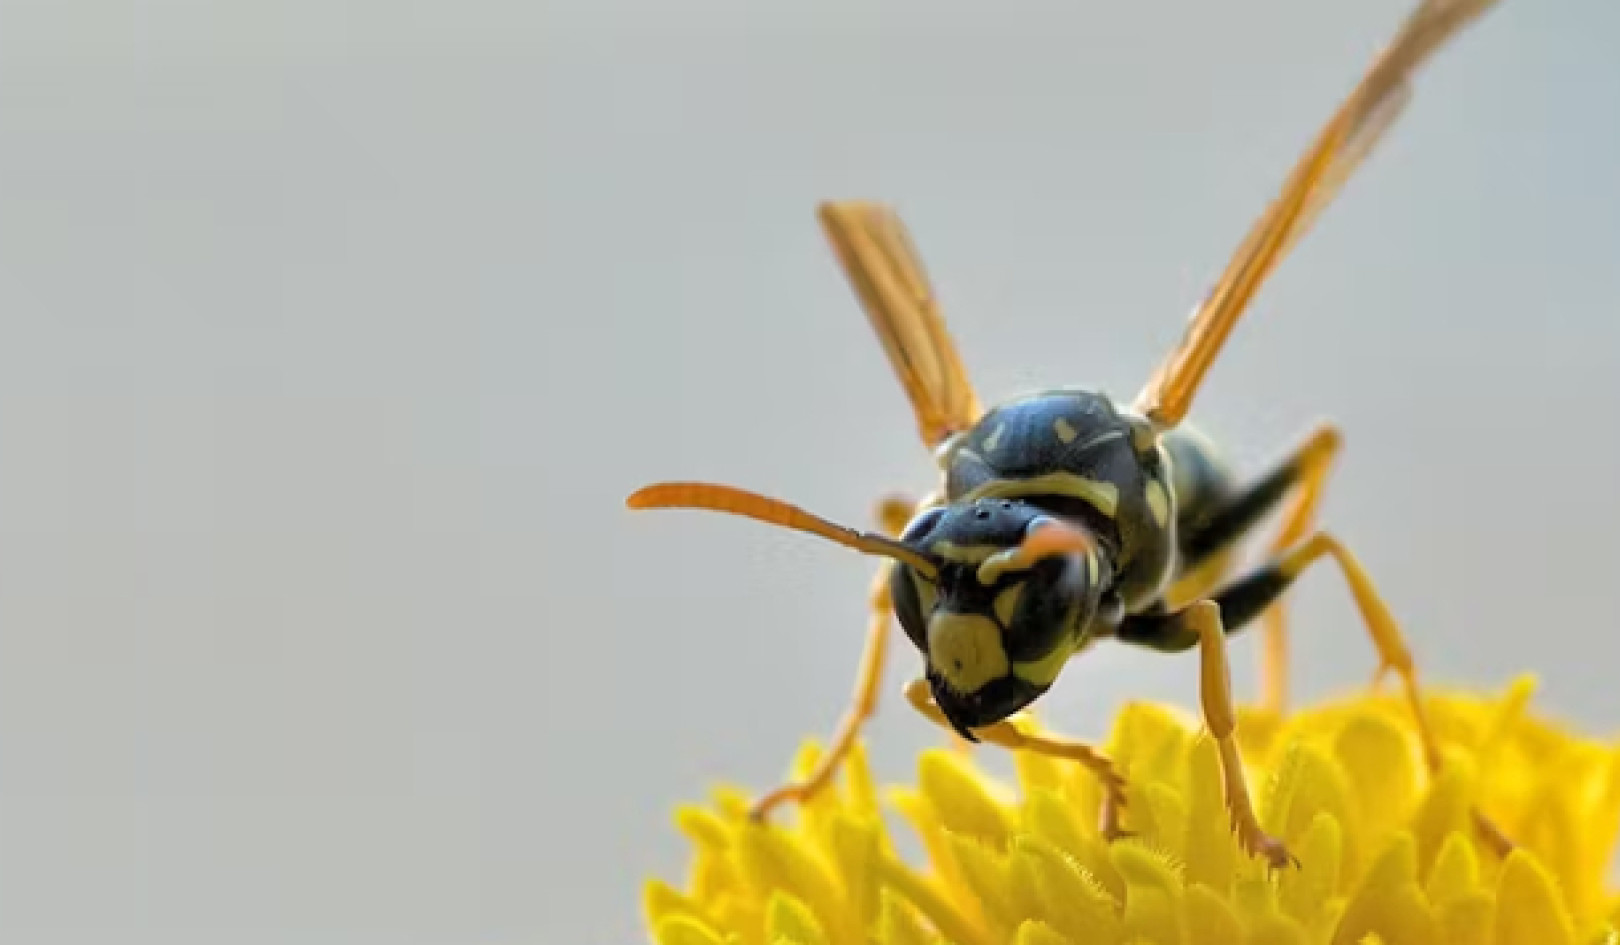 زنبورها: نابغه دست کم گرفته شده در حیاط خلوت شما